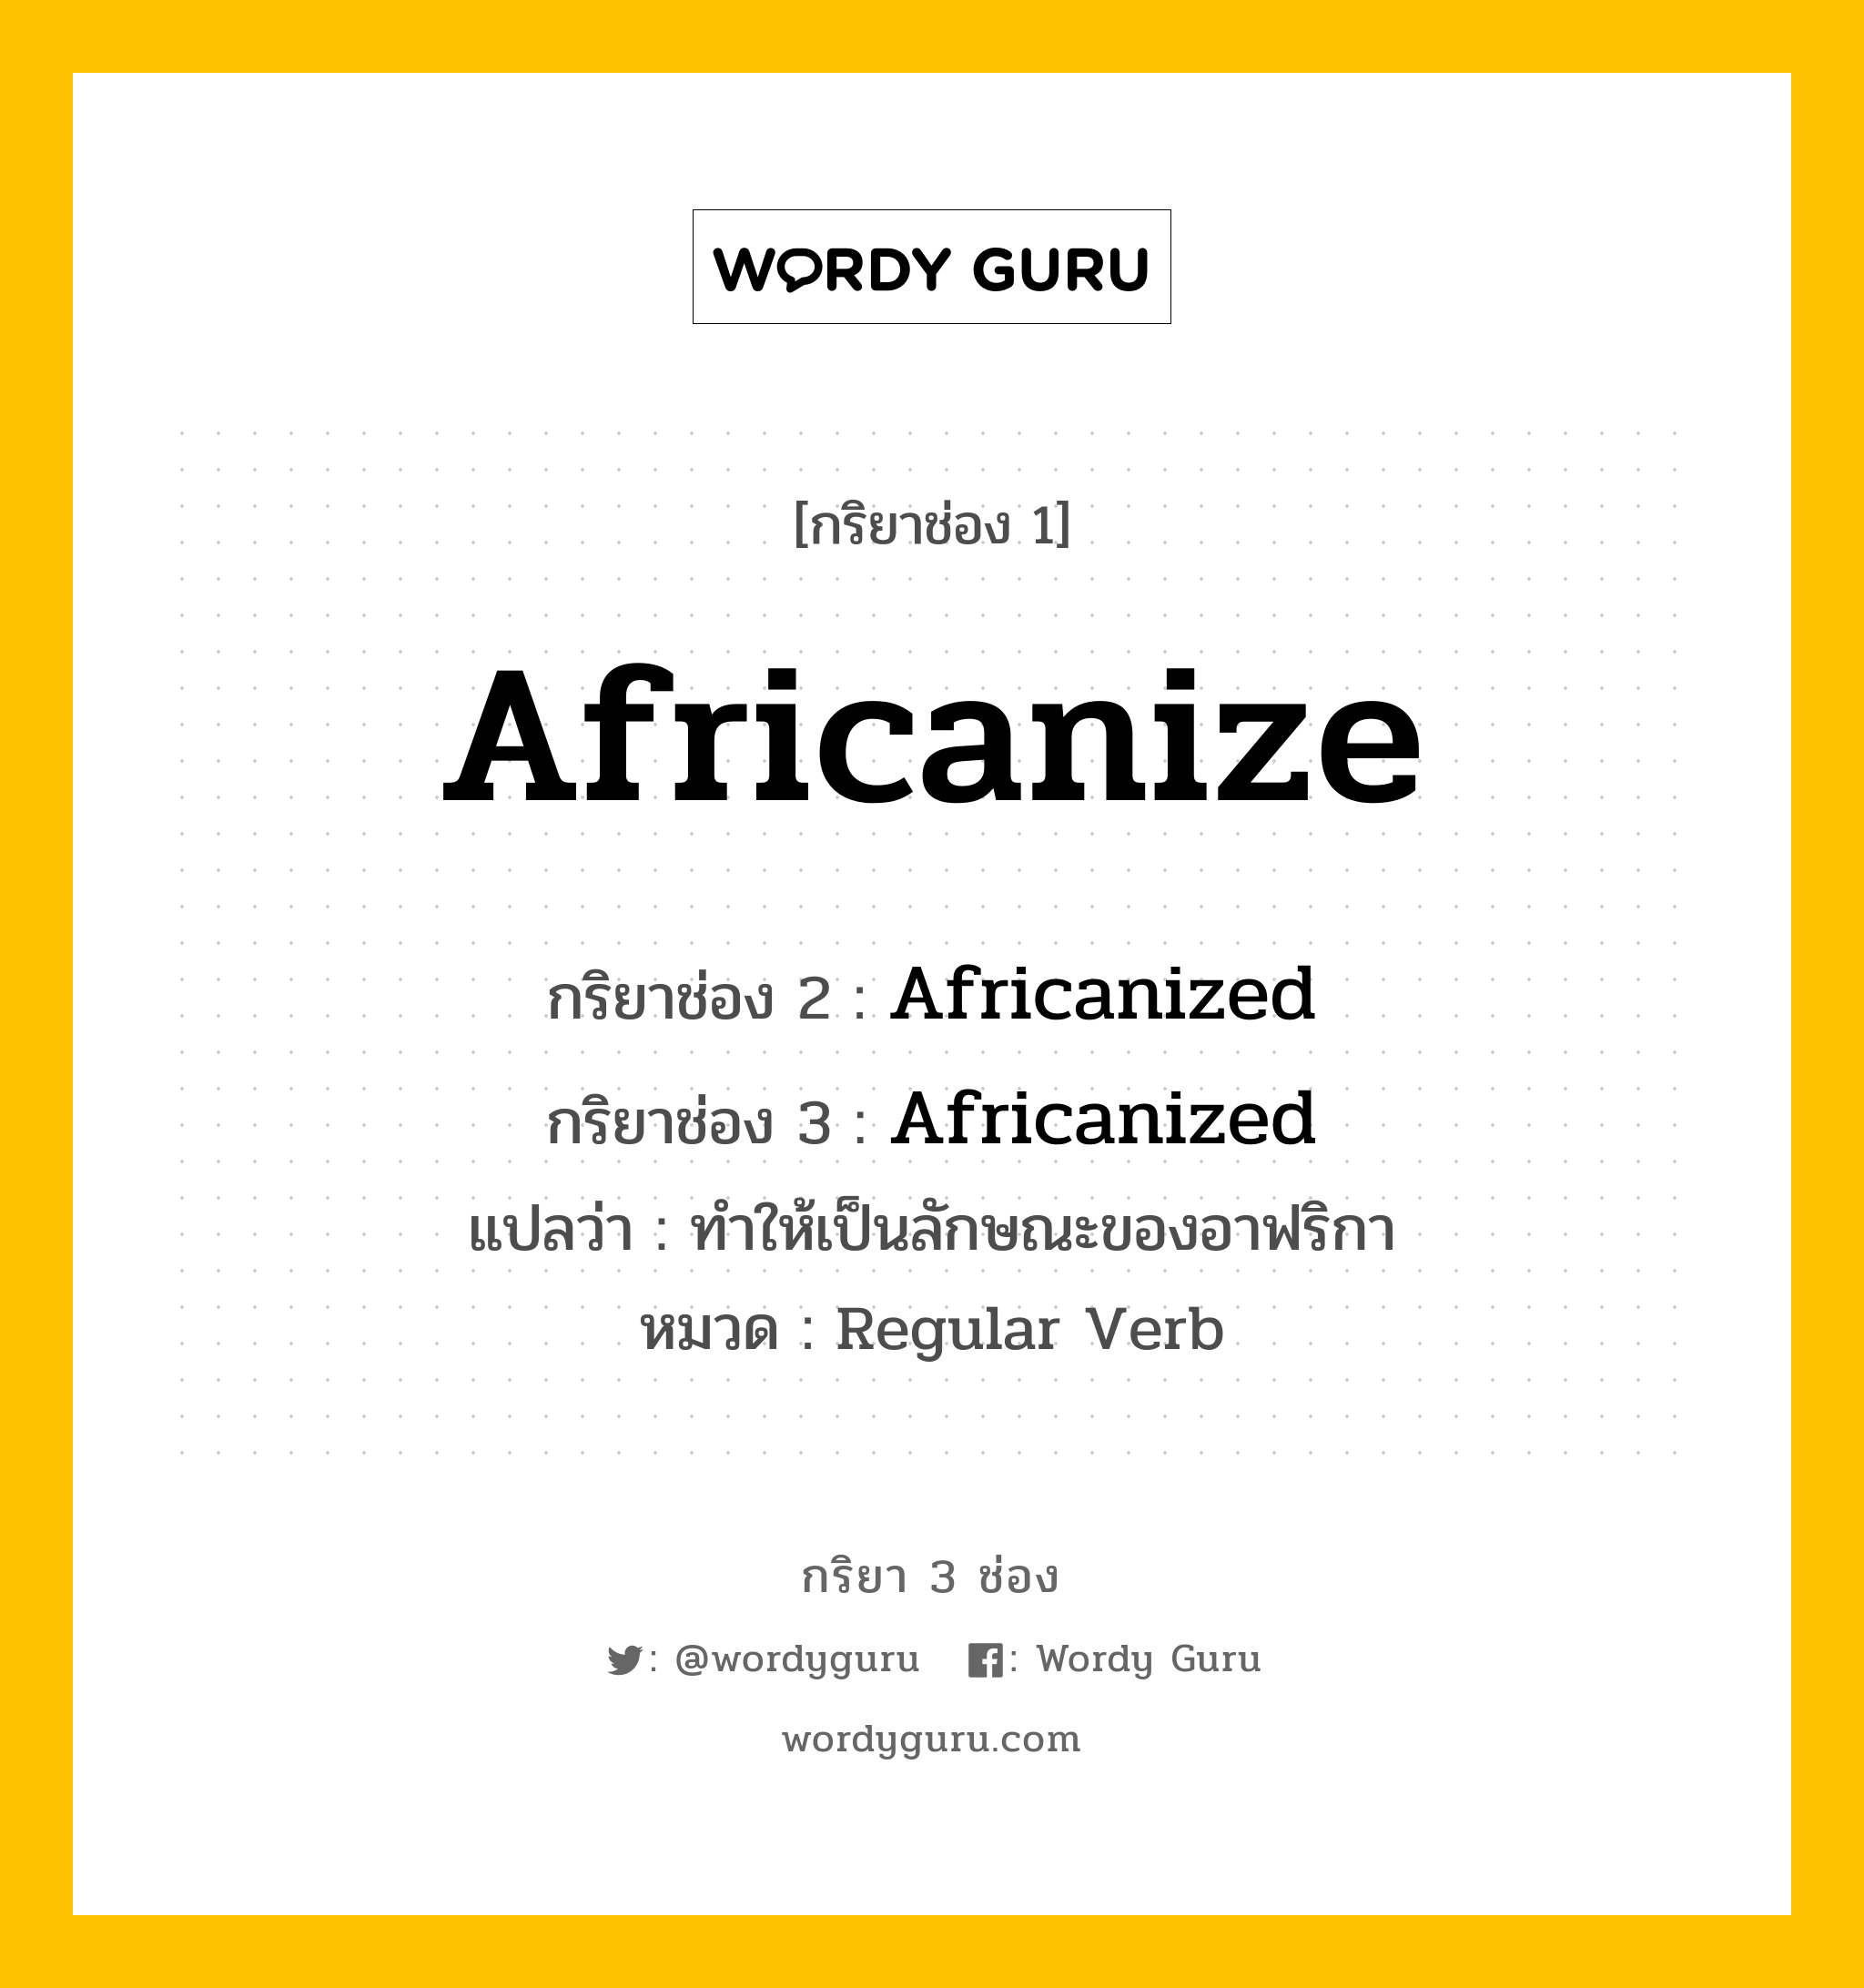 Africanize มีกริยา 3 ช่องอะไรบ้าง? คำศัพท์ในกลุ่มประเภท Regular Verb, กริยาช่อง 1 Africanize กริยาช่อง 2 Africanized กริยาช่อง 3 Africanized แปลว่า ทำให้เป็นลักษณะของอาฟริกา หมวด Regular Verb หมวด Regular Verb